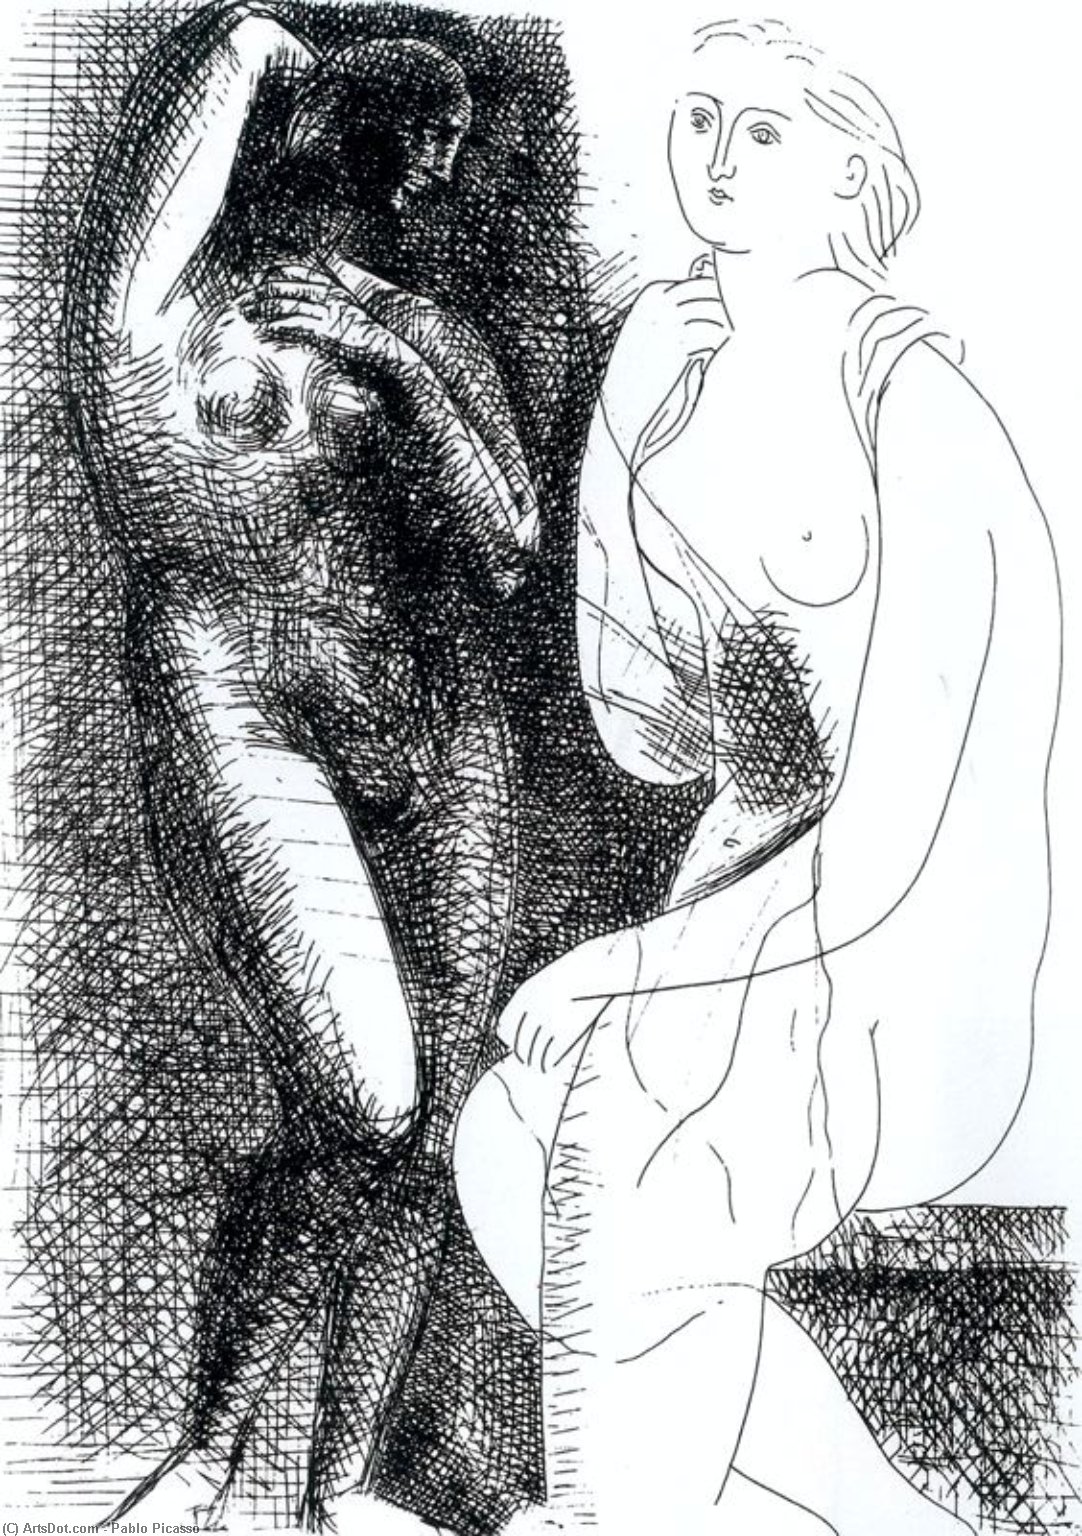 WikiOO.org - Εγκυκλοπαίδεια Καλών Τεχνών - Ζωγραφική, έργα τέχνης Pablo Picasso - Mujer desnuda delante de una estatua